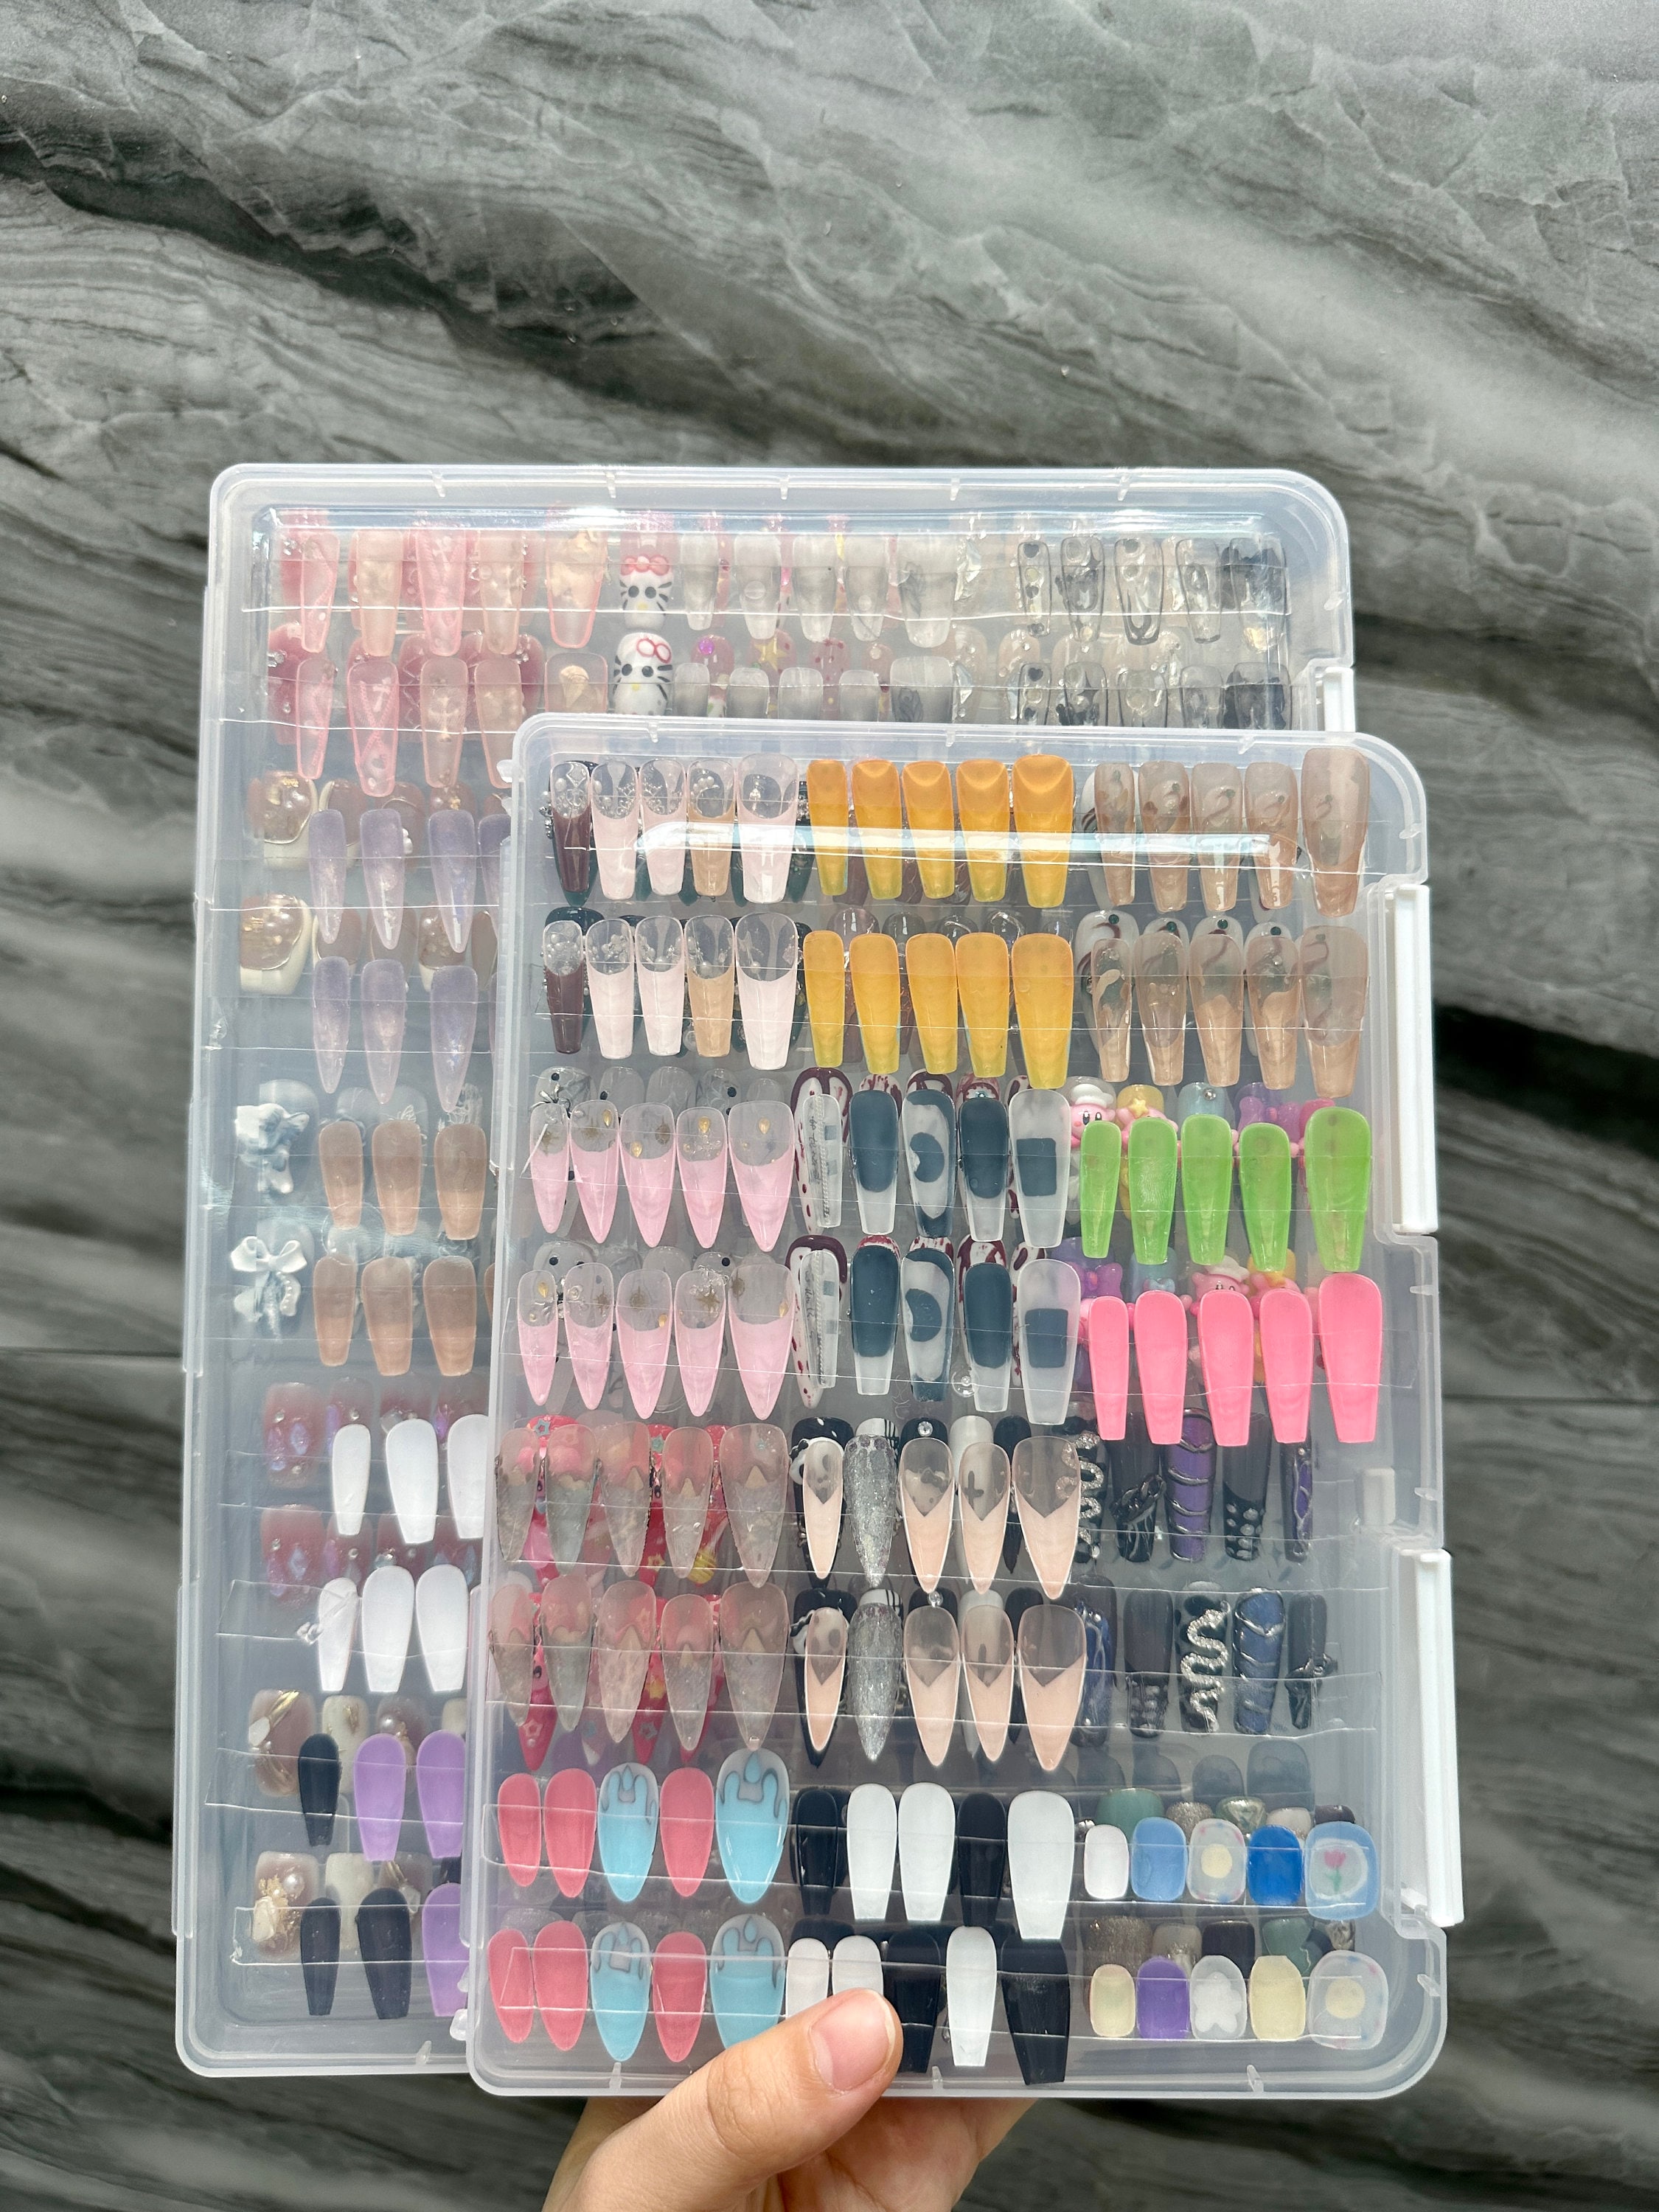 False Nails Press On Nail Storage Box 3x3inch Acrylic Nail Packing Box For  Home Use Nail Salon Nail Display Case 230927 From Bao04, $10.19